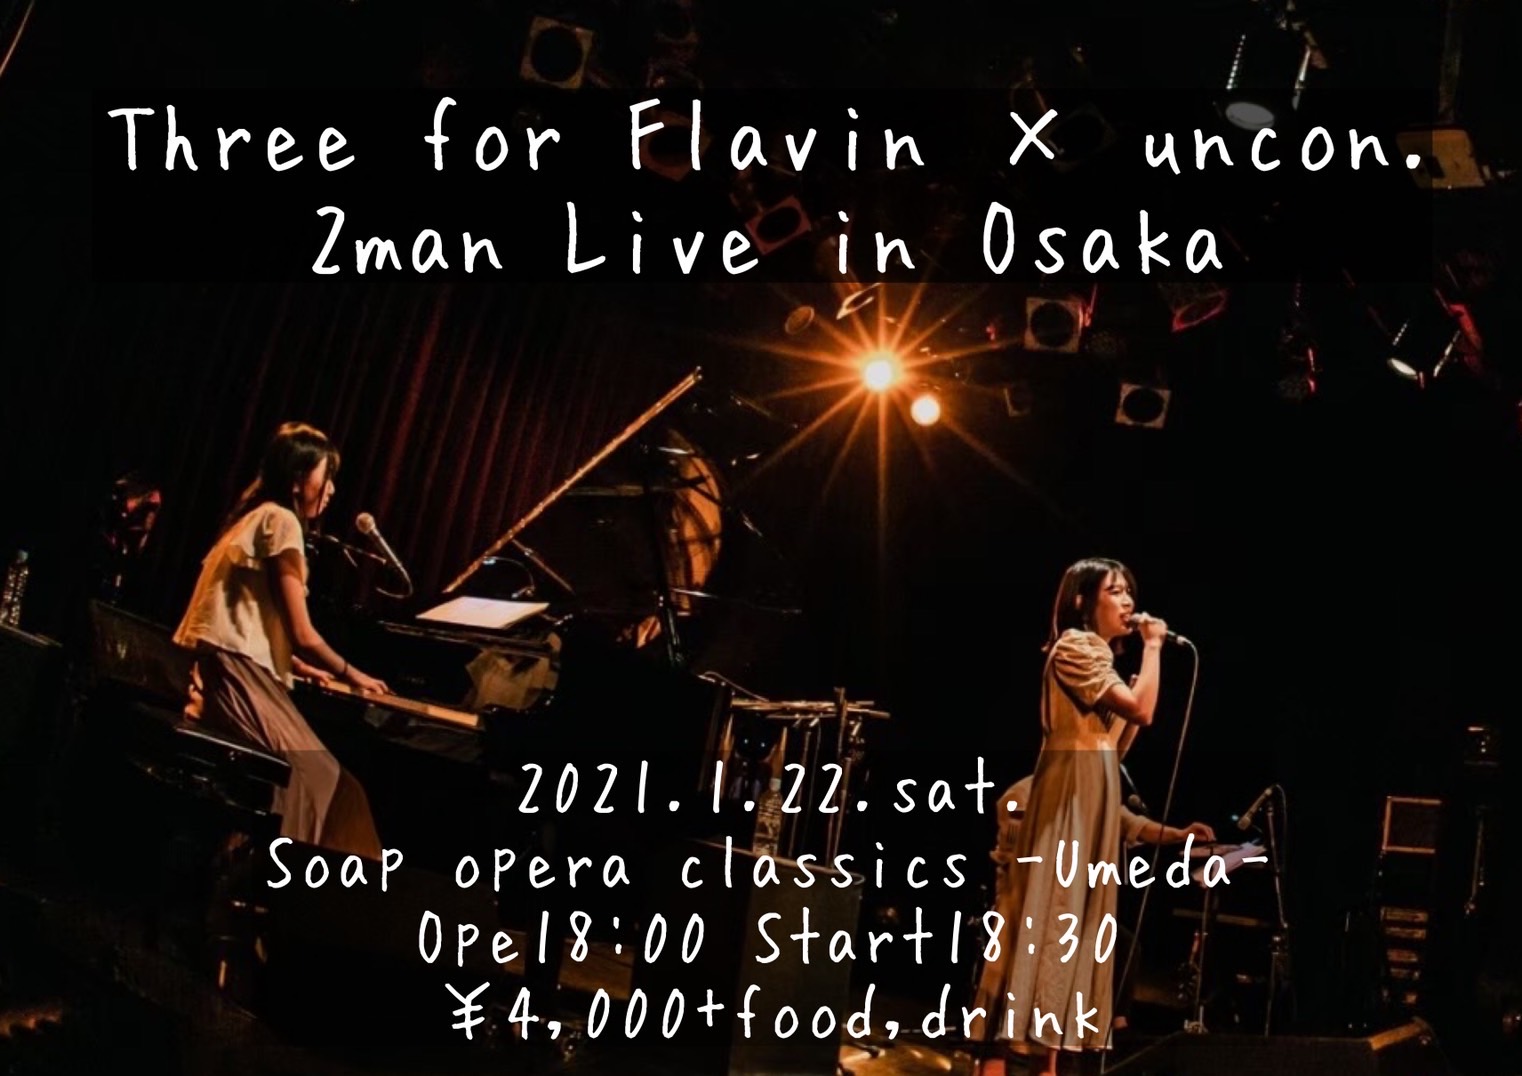 【延期】Three for Flavin×uncon. 2man Live in Osaka